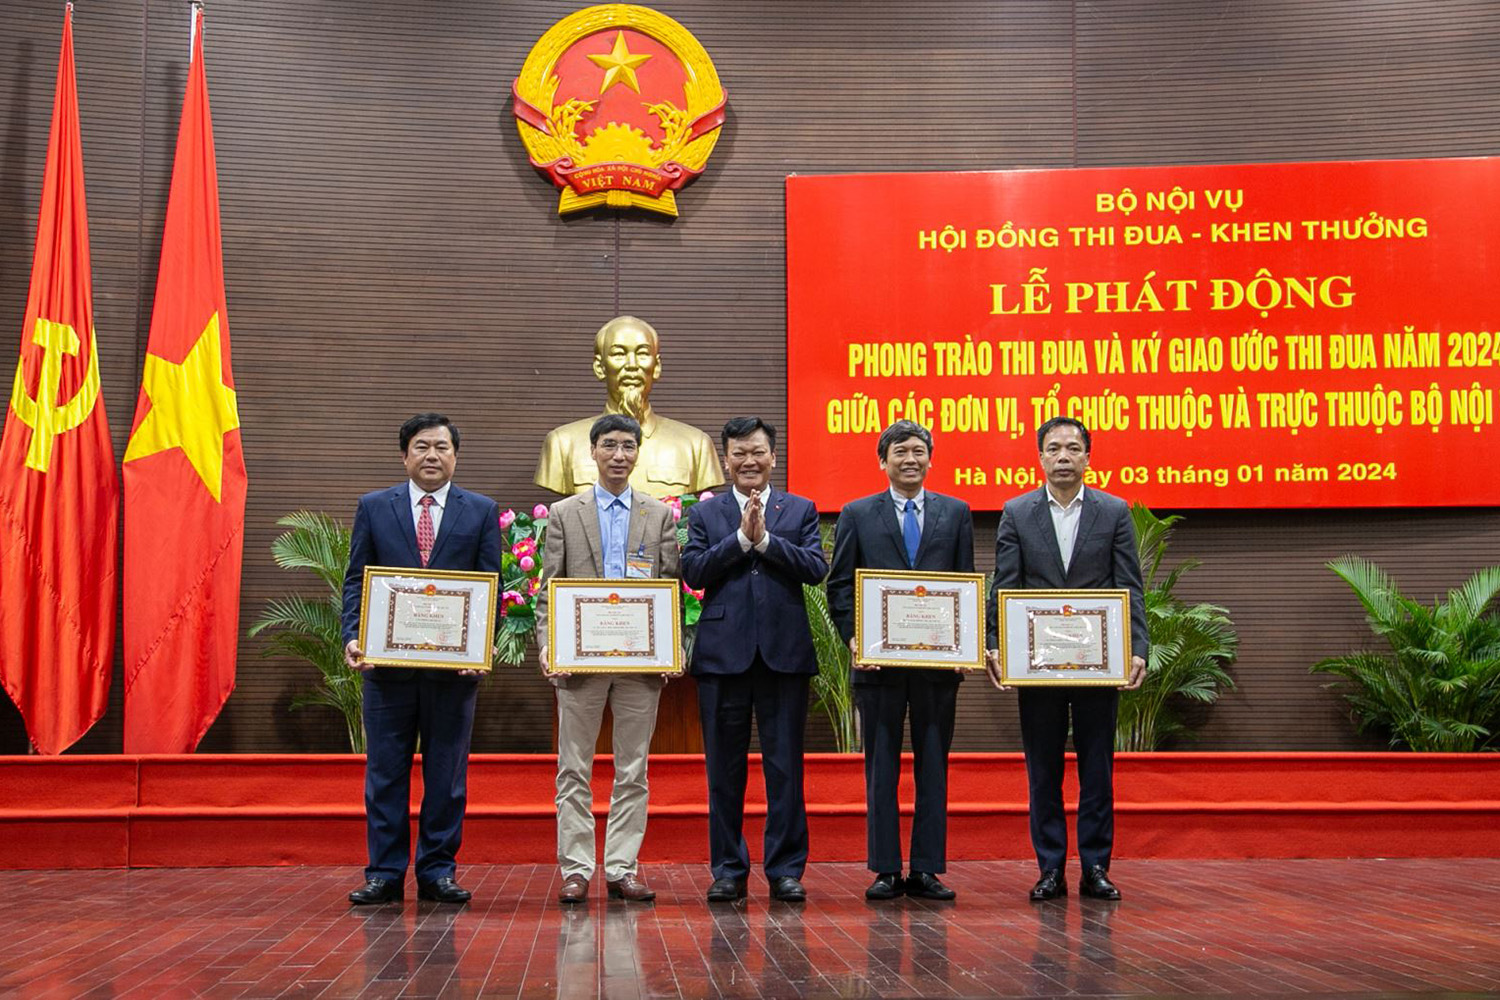 Thứ trưởng Nguyễn Duy Thăng trao Bằng khen của Bộ trưởng Bộ Nội vụ cho 04 đơn vị đã có thành tích trong phong trào thi đua hoàn thành Cơ sở dữ liệu.